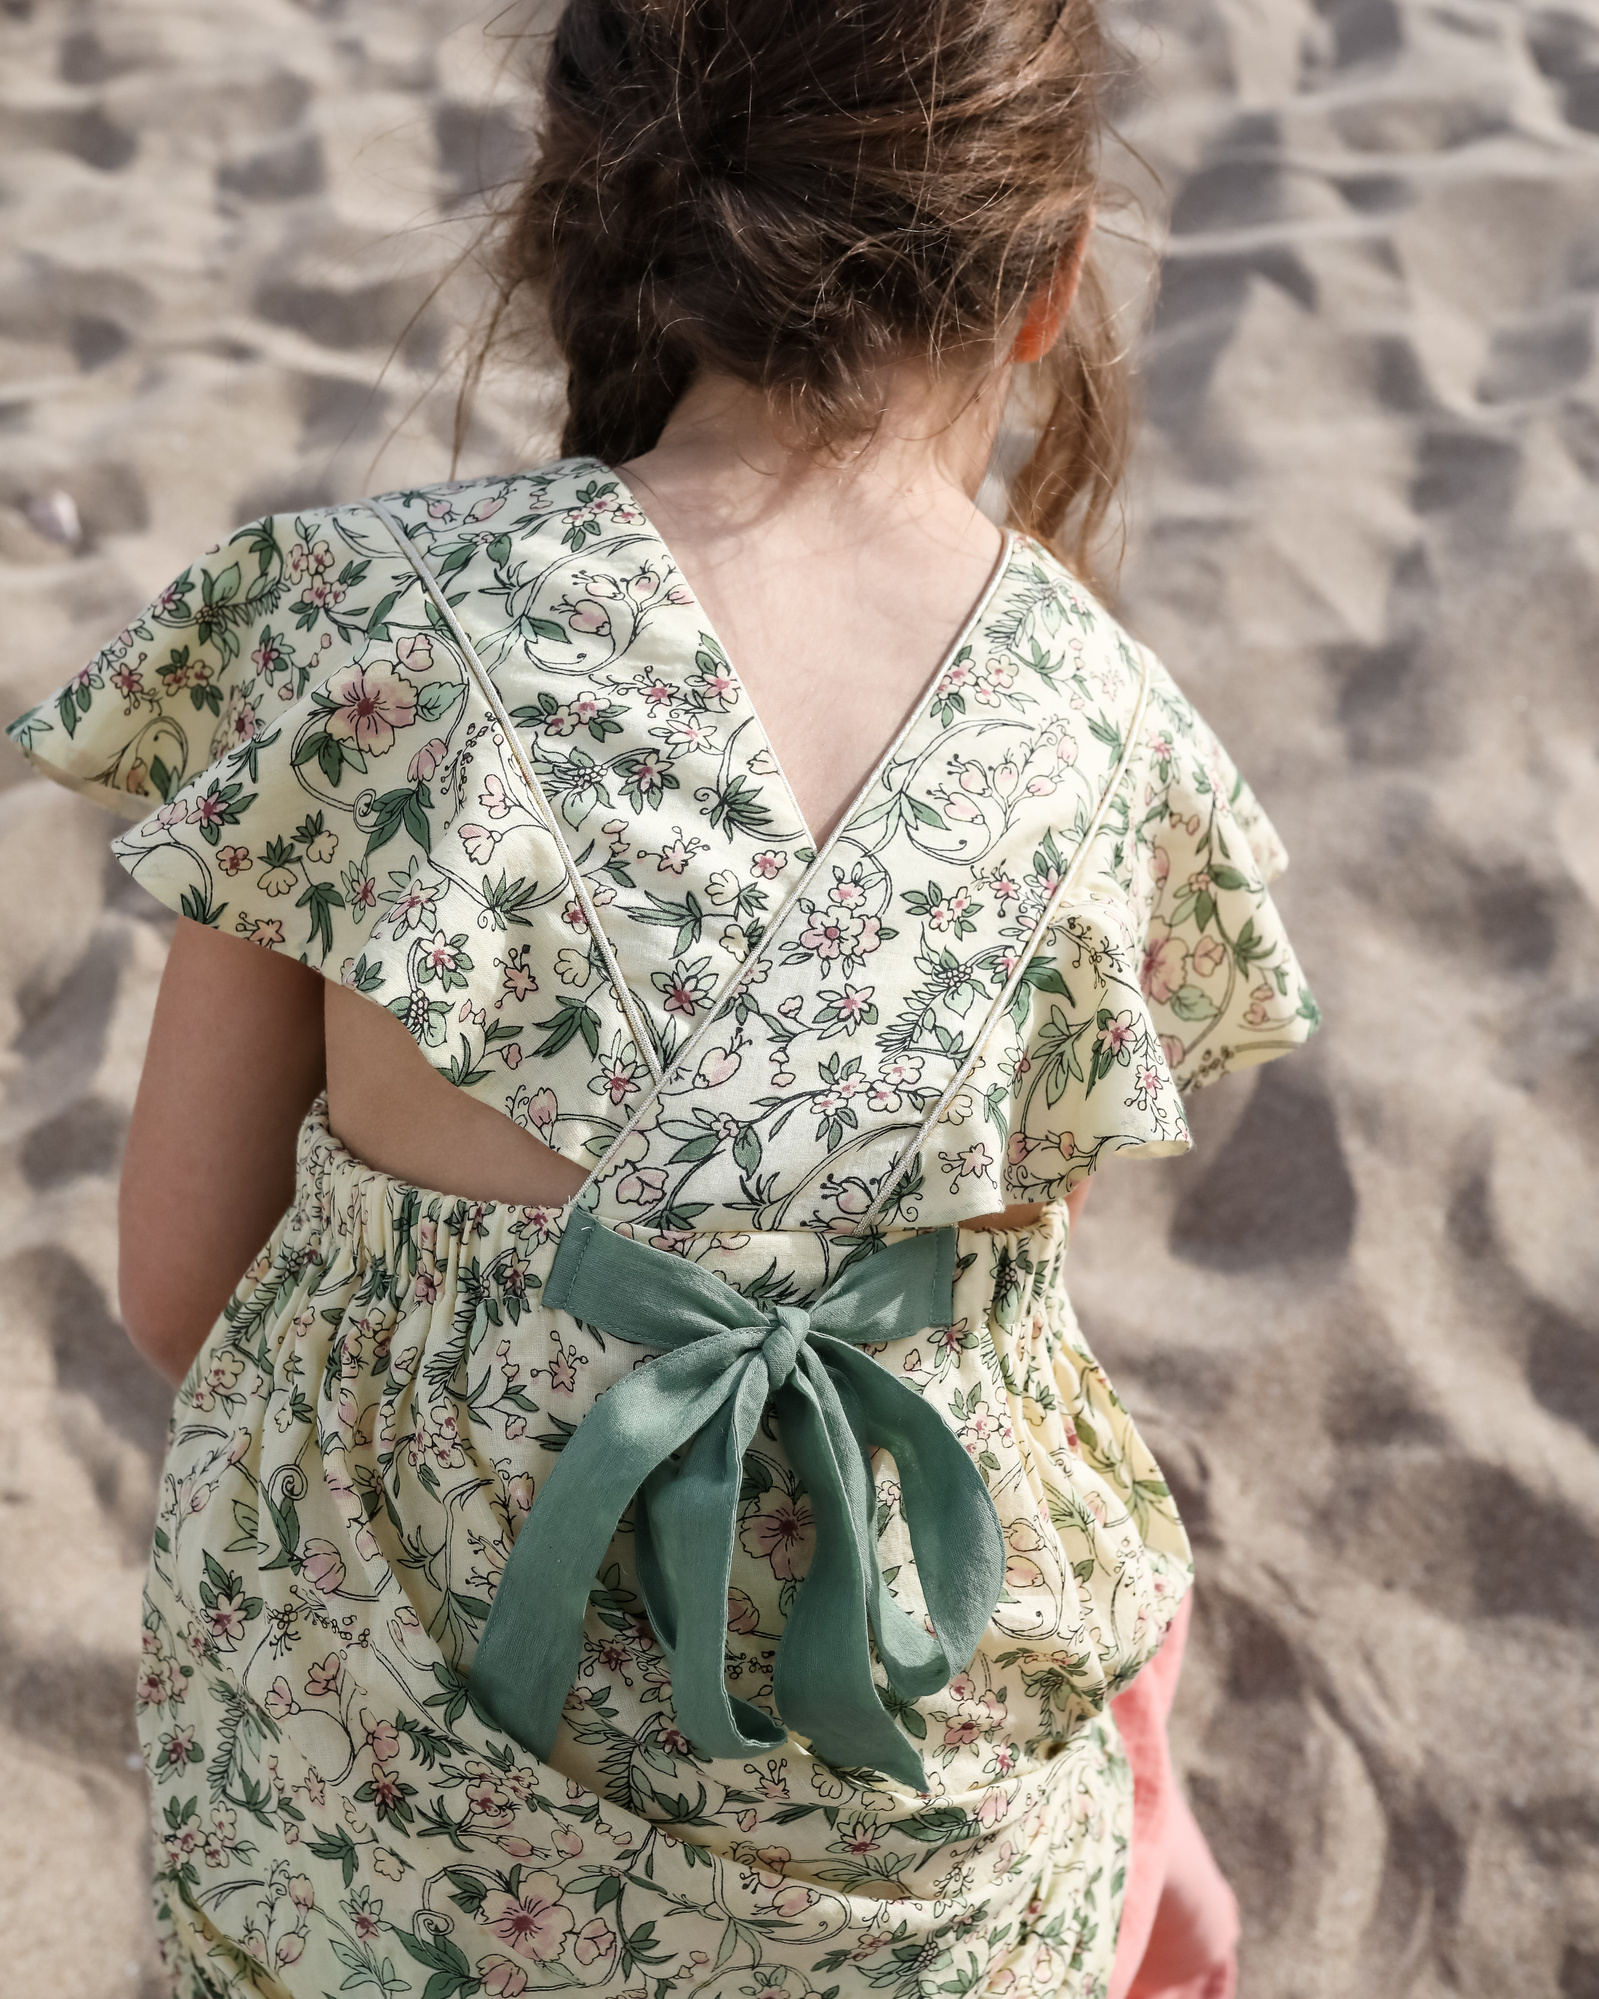 detalle de vestido de niña en la playa las casetas del Garraf en barcelona, españa